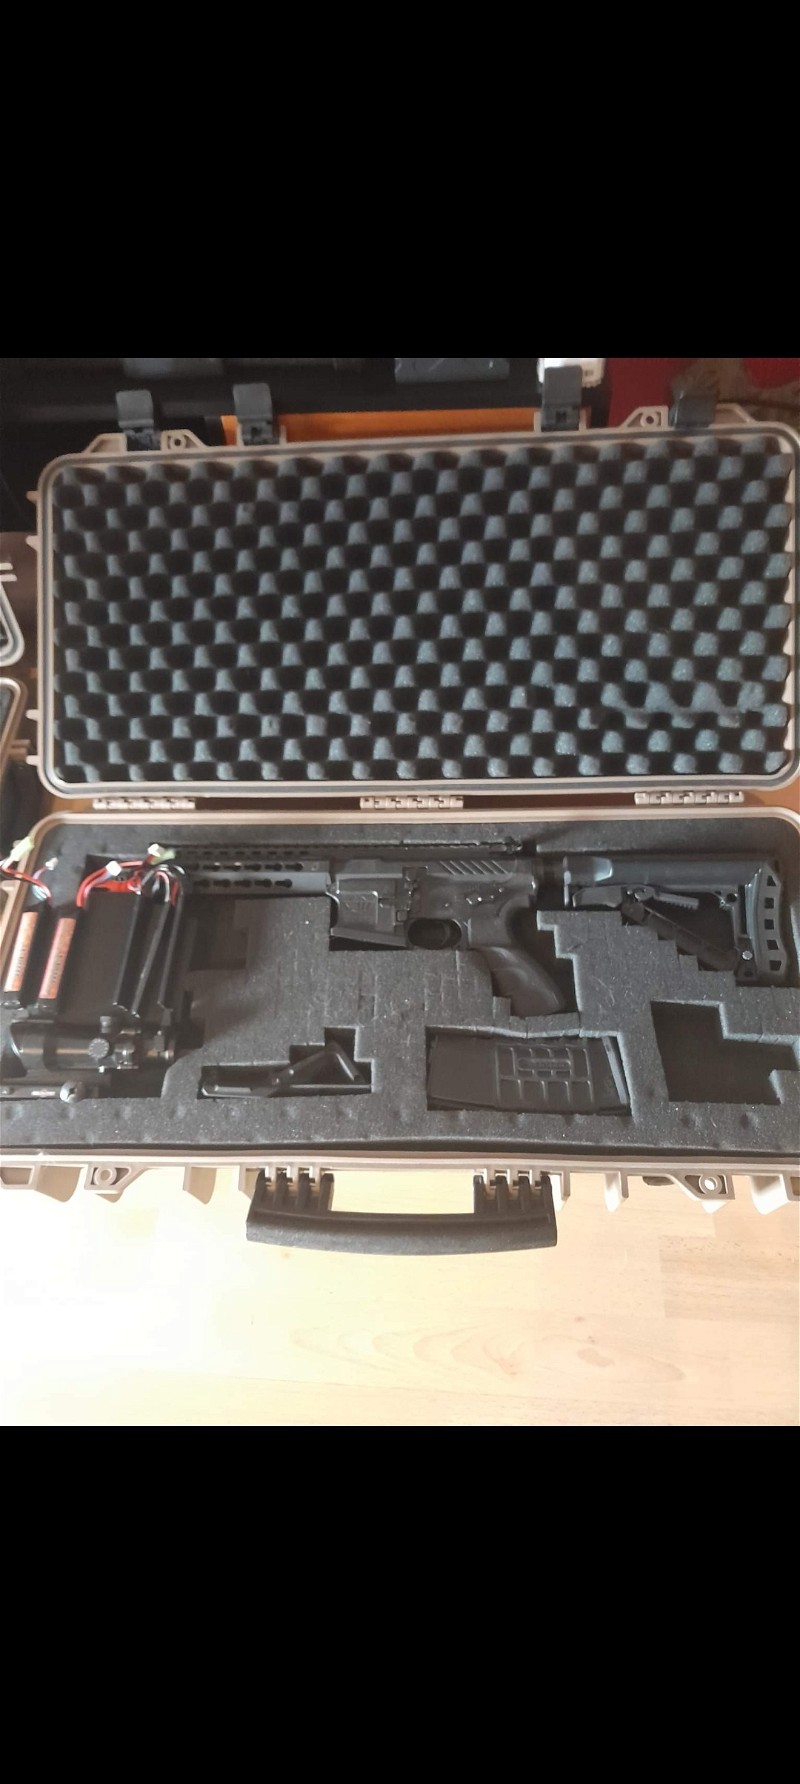 Image 1 for G&g cm16 srs + case + red dot scope and batterijen.